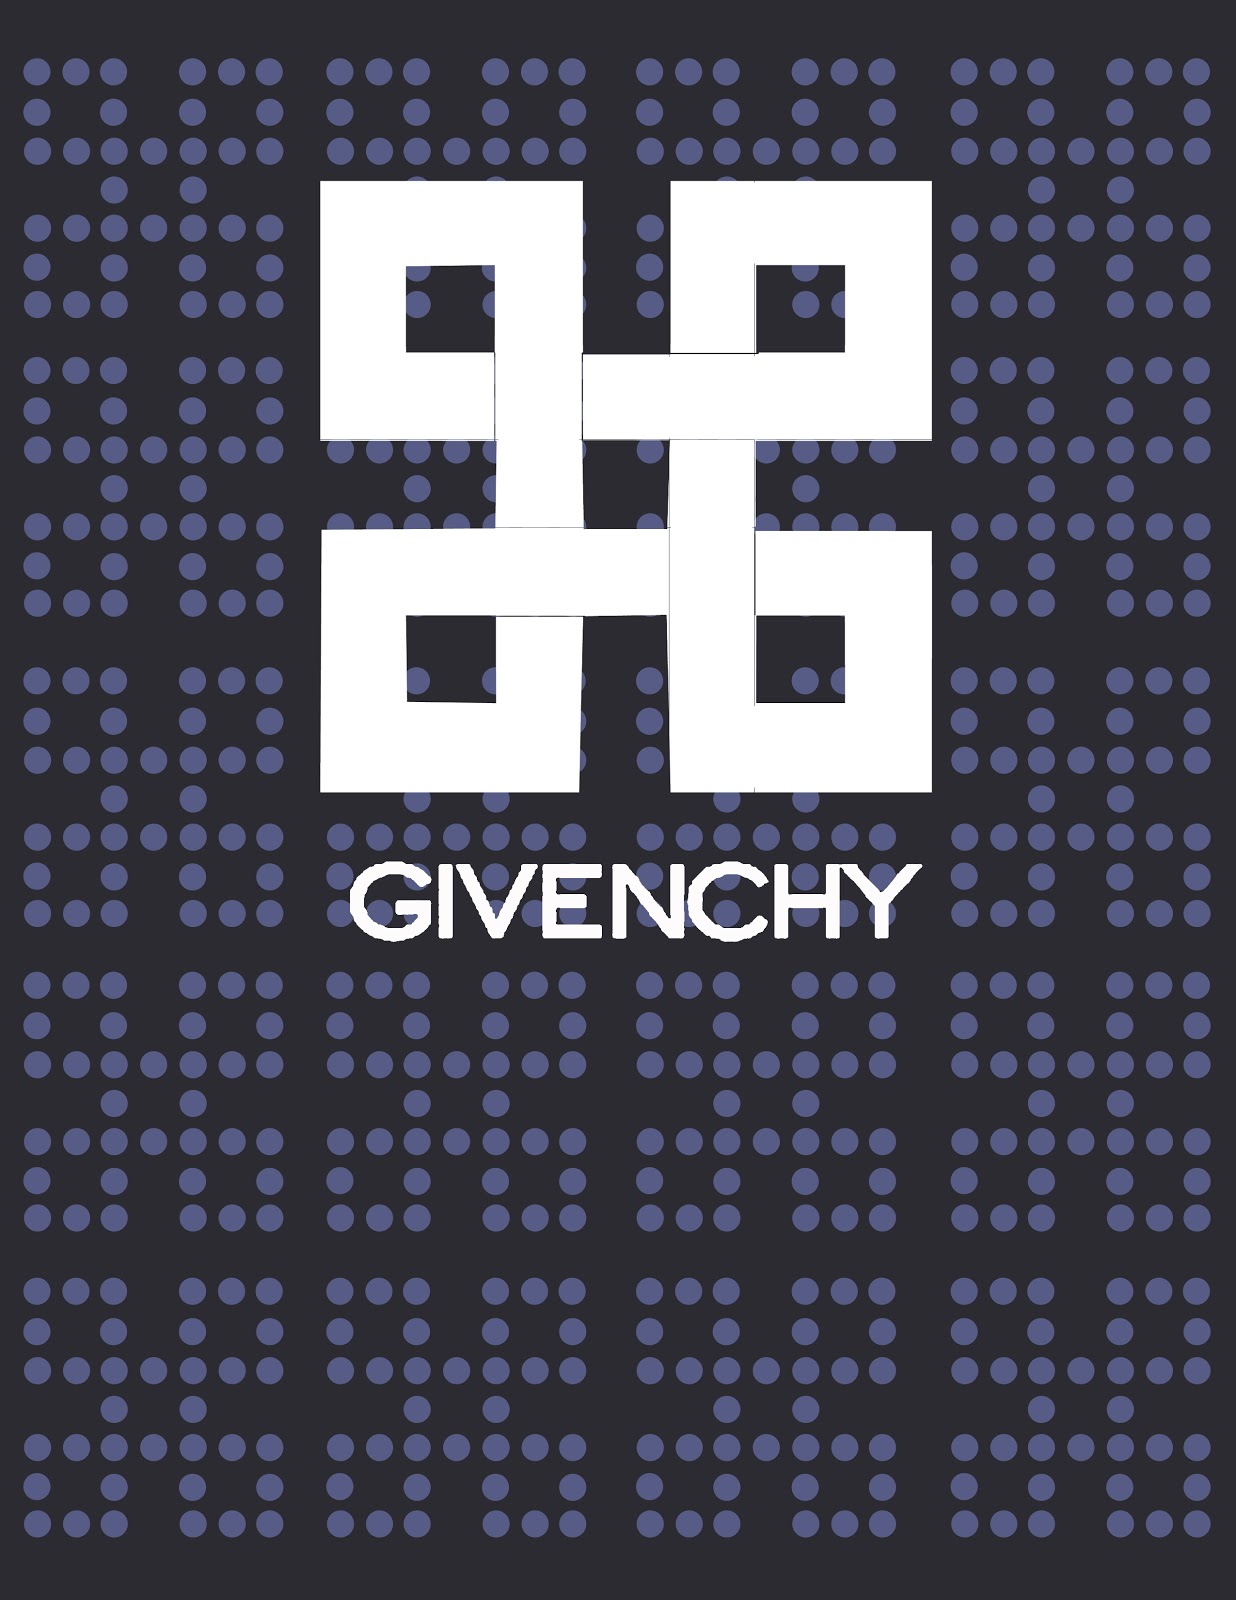 Advertising_Winter2013: Chinbayar Davaatseren, Final Givenchy